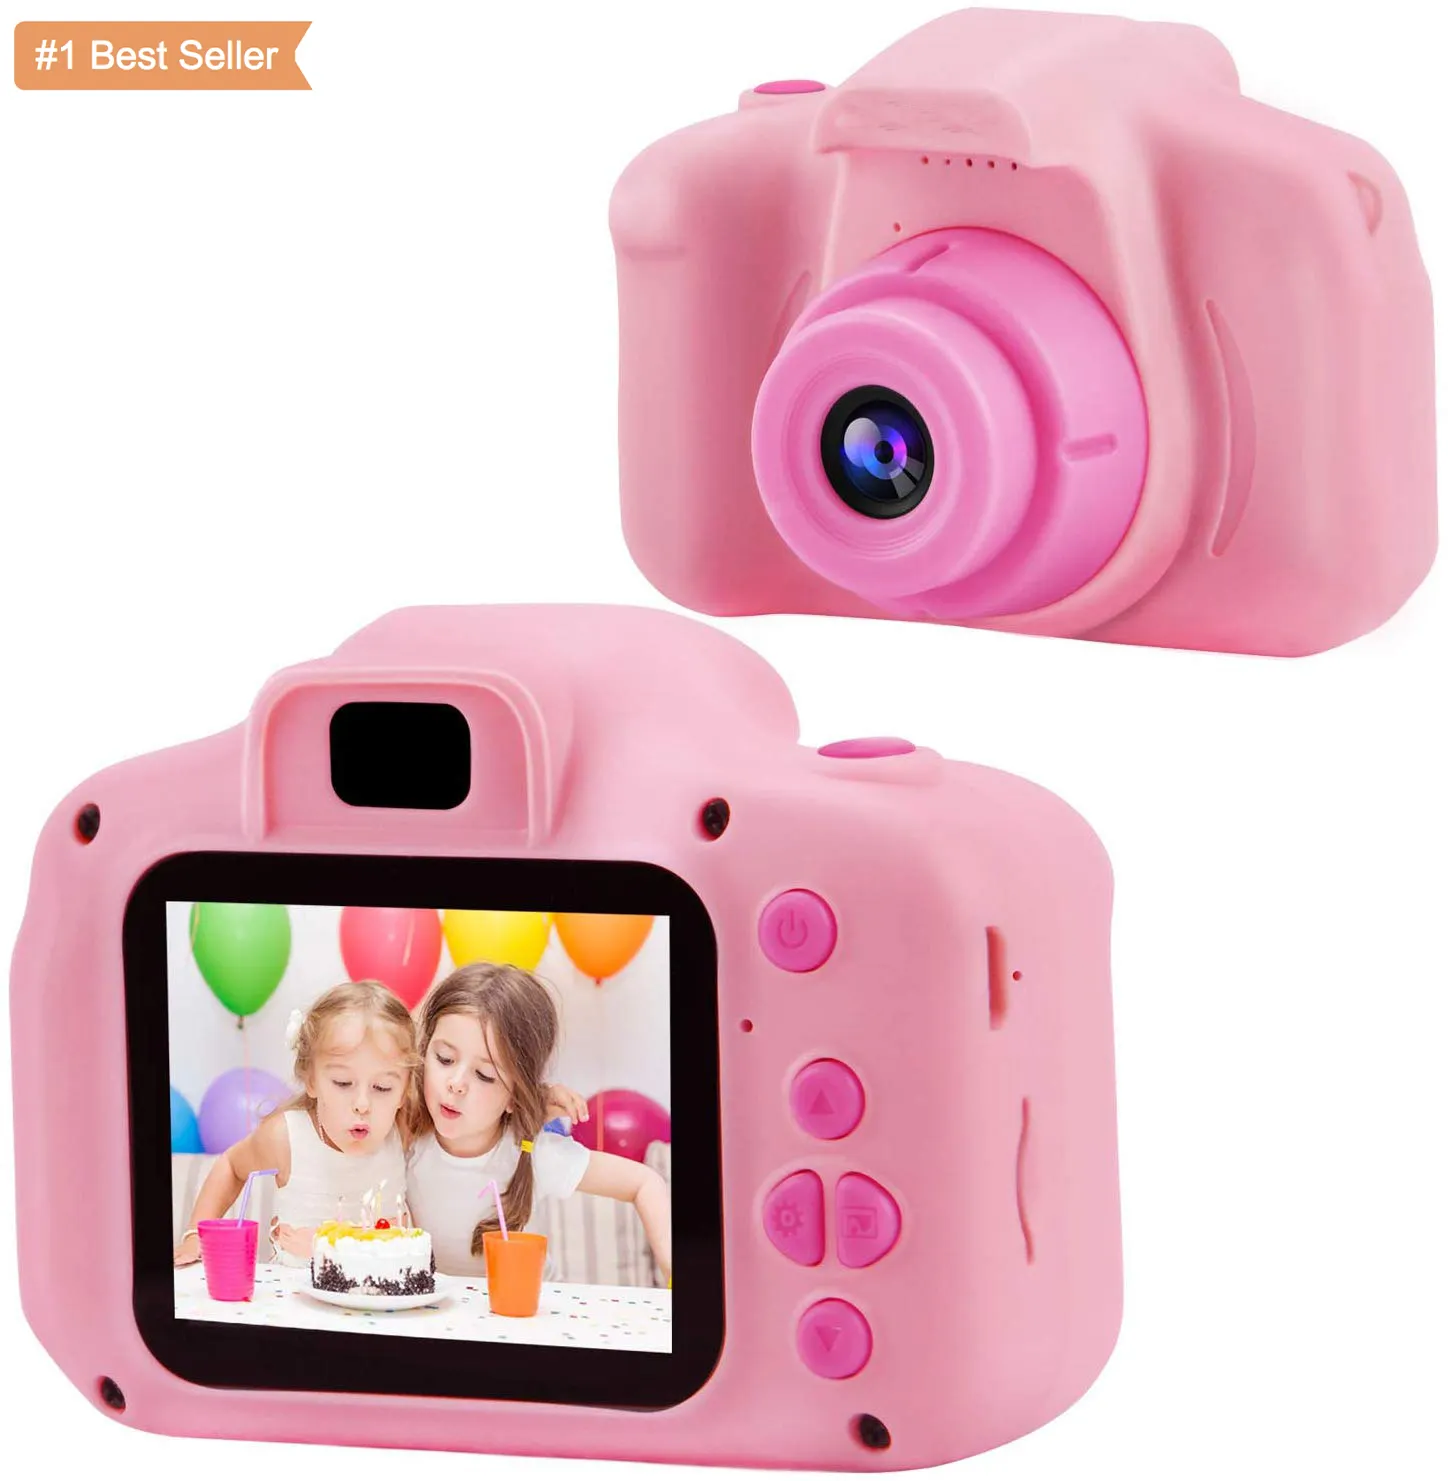 Jumon охранная цифровая видео 2-Дюймовая игрушка для девочек и мальчиков мини-камера Противоударная 1080P язык фото подарок мультяшная рамка Hd детская камера